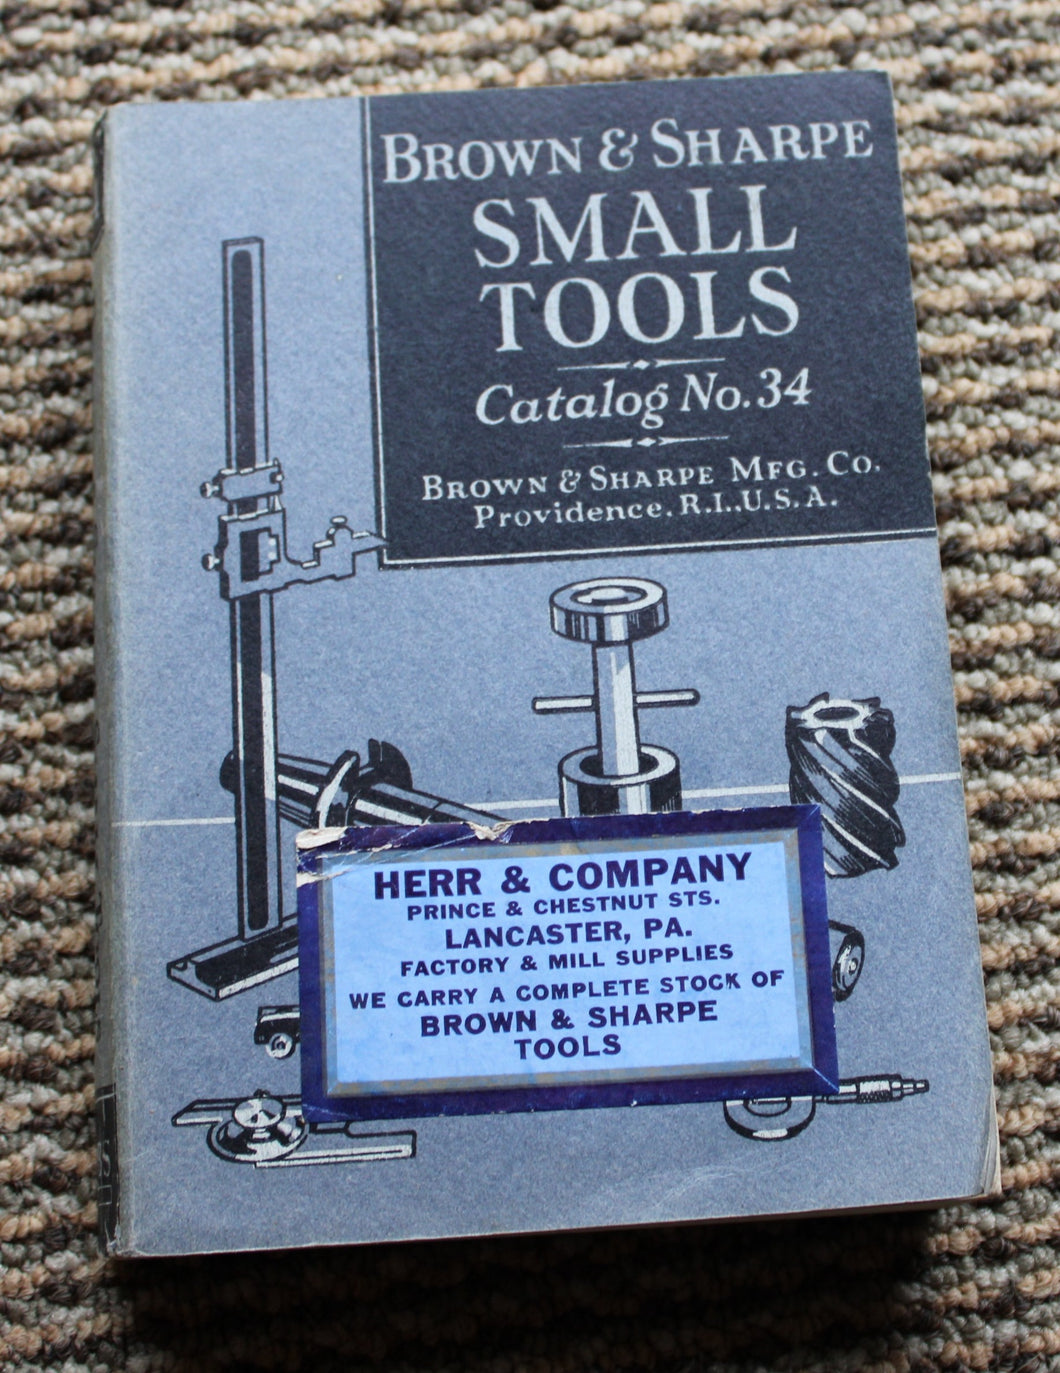 Brown & Sharpe Small Tools Catalog No. 34